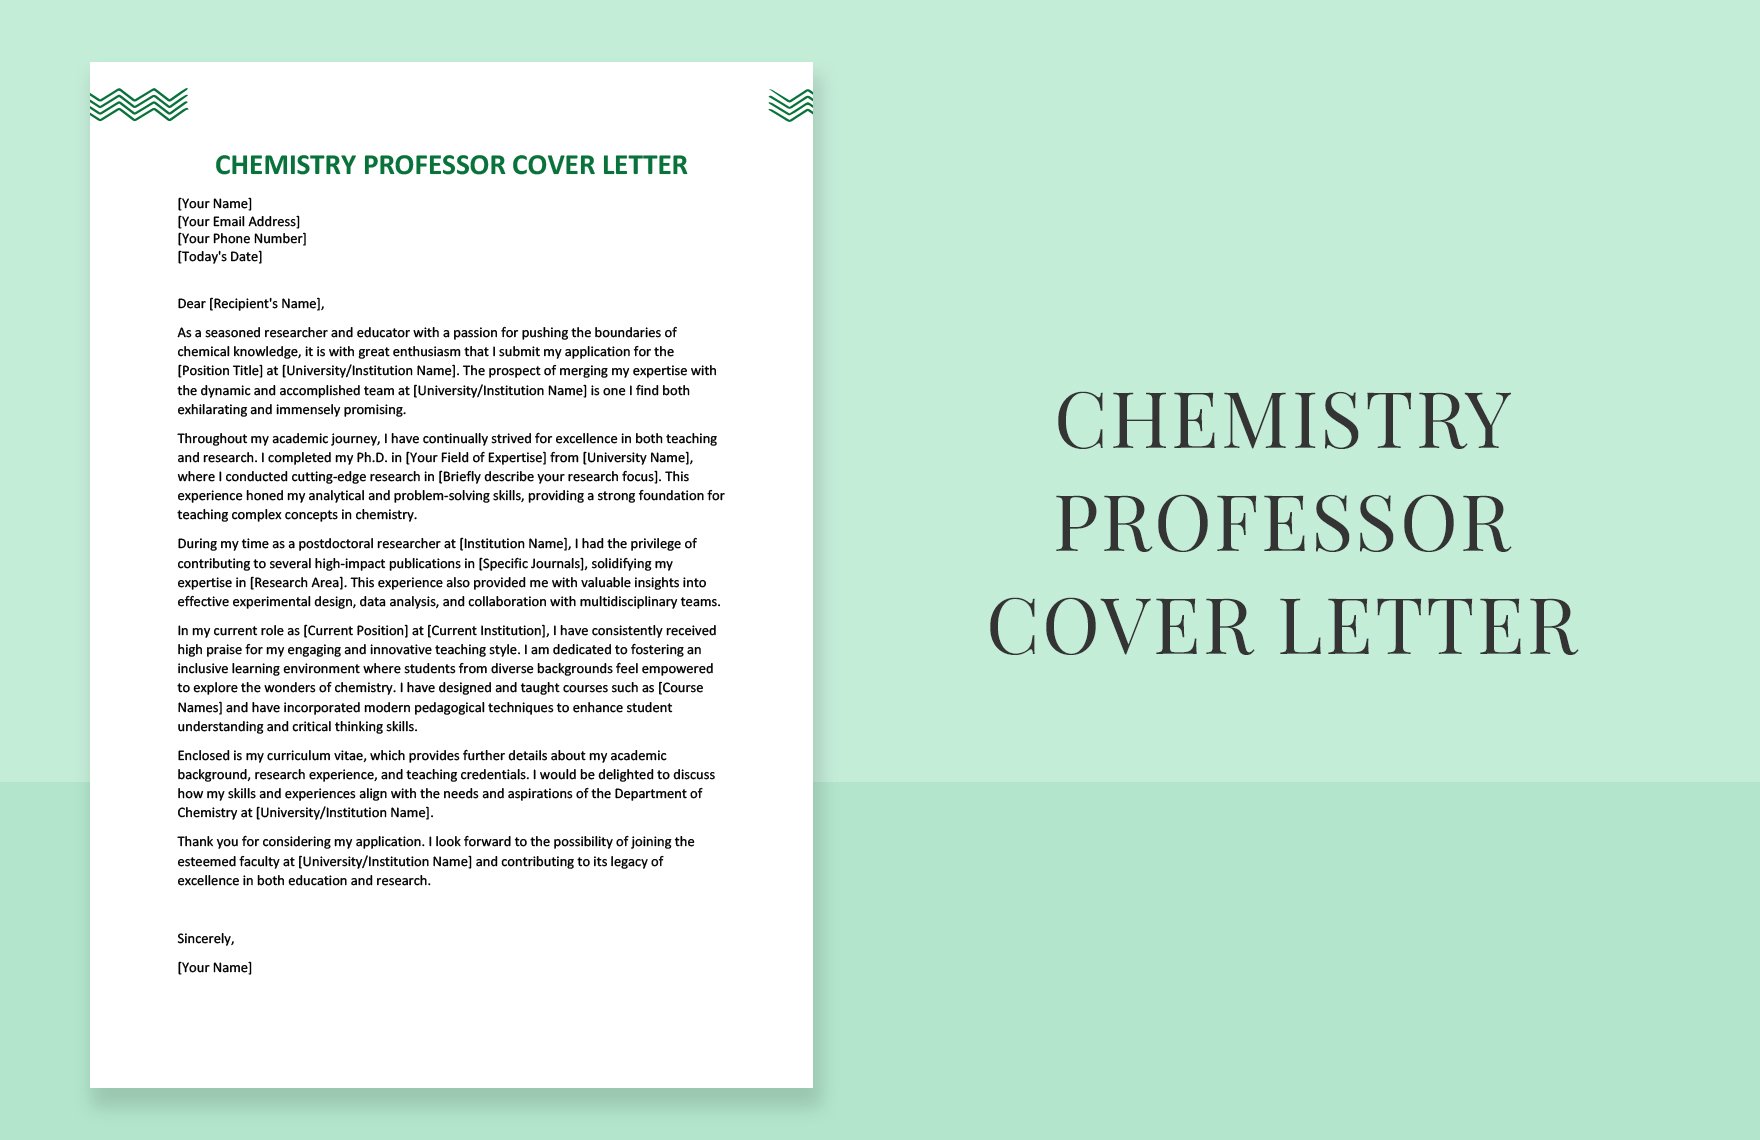 cover letter for chemistry teacher